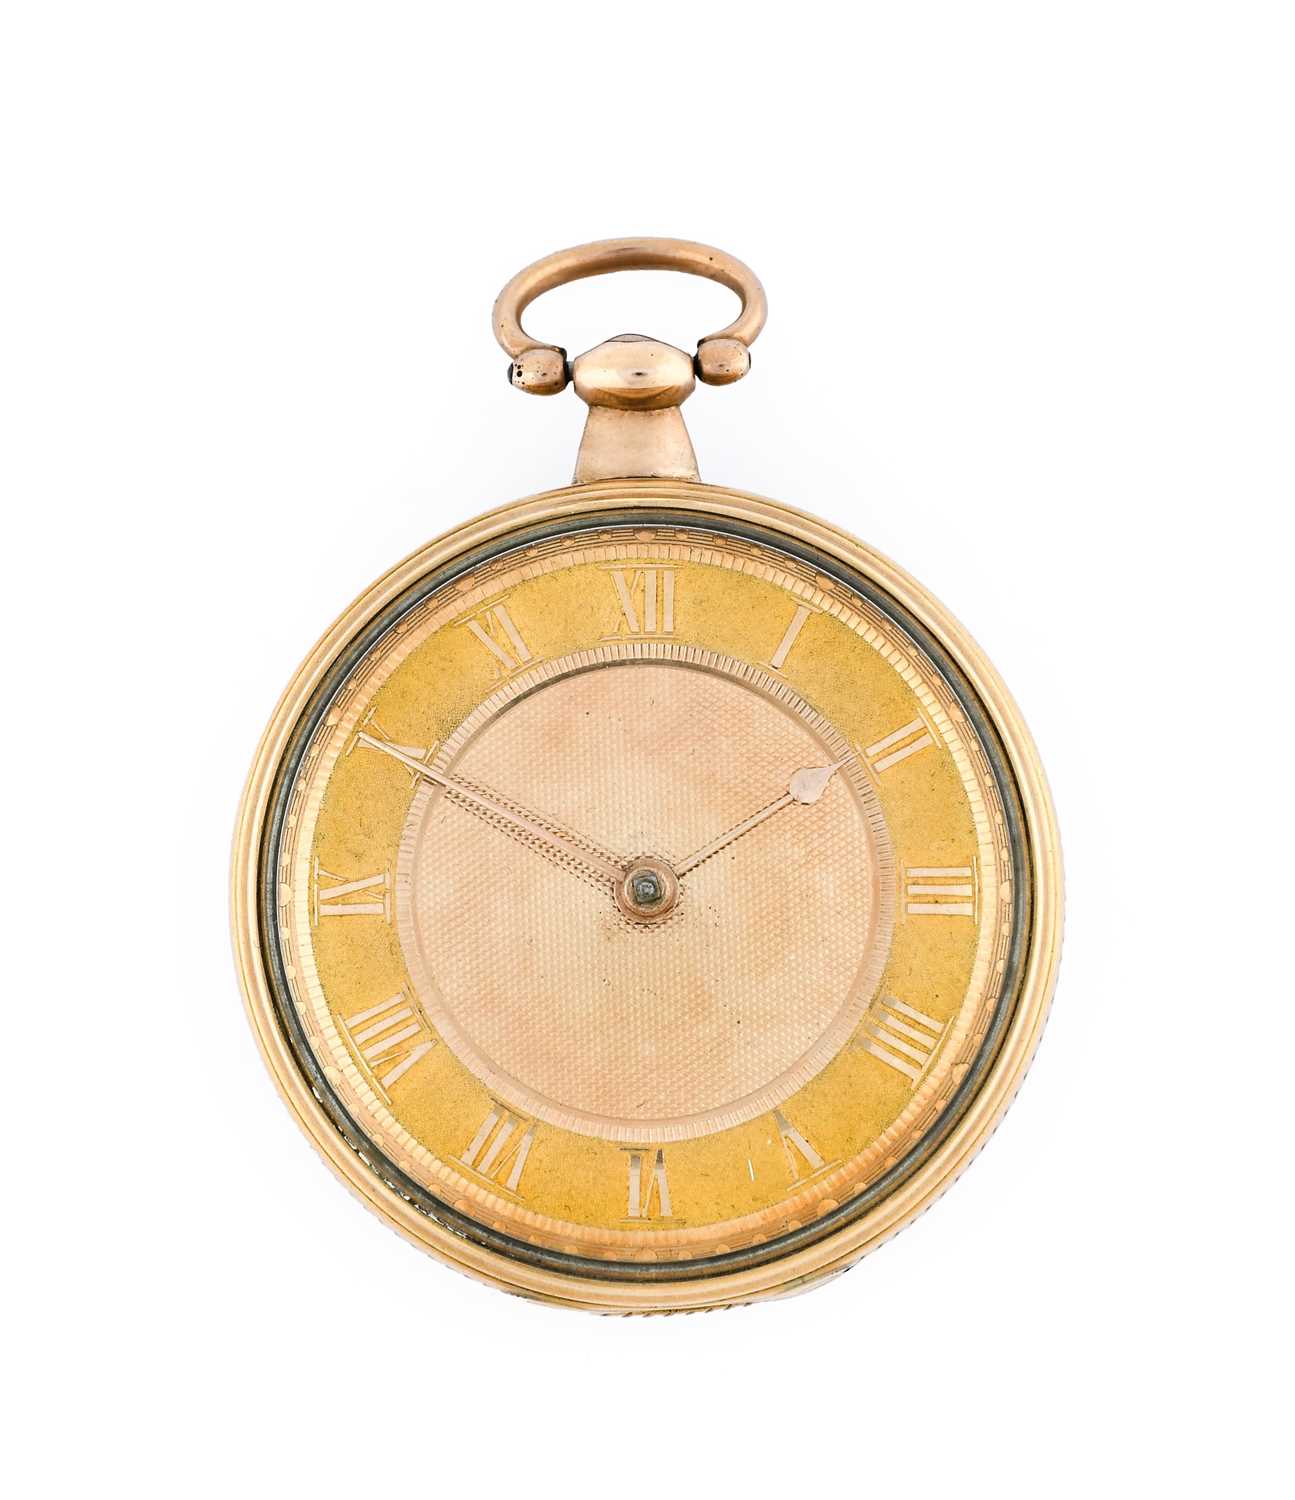 Twycross & Farley: An 18 Carat Gold Verge Open Faced Pocket Watch, signed Twycross & Farley, Dublin,